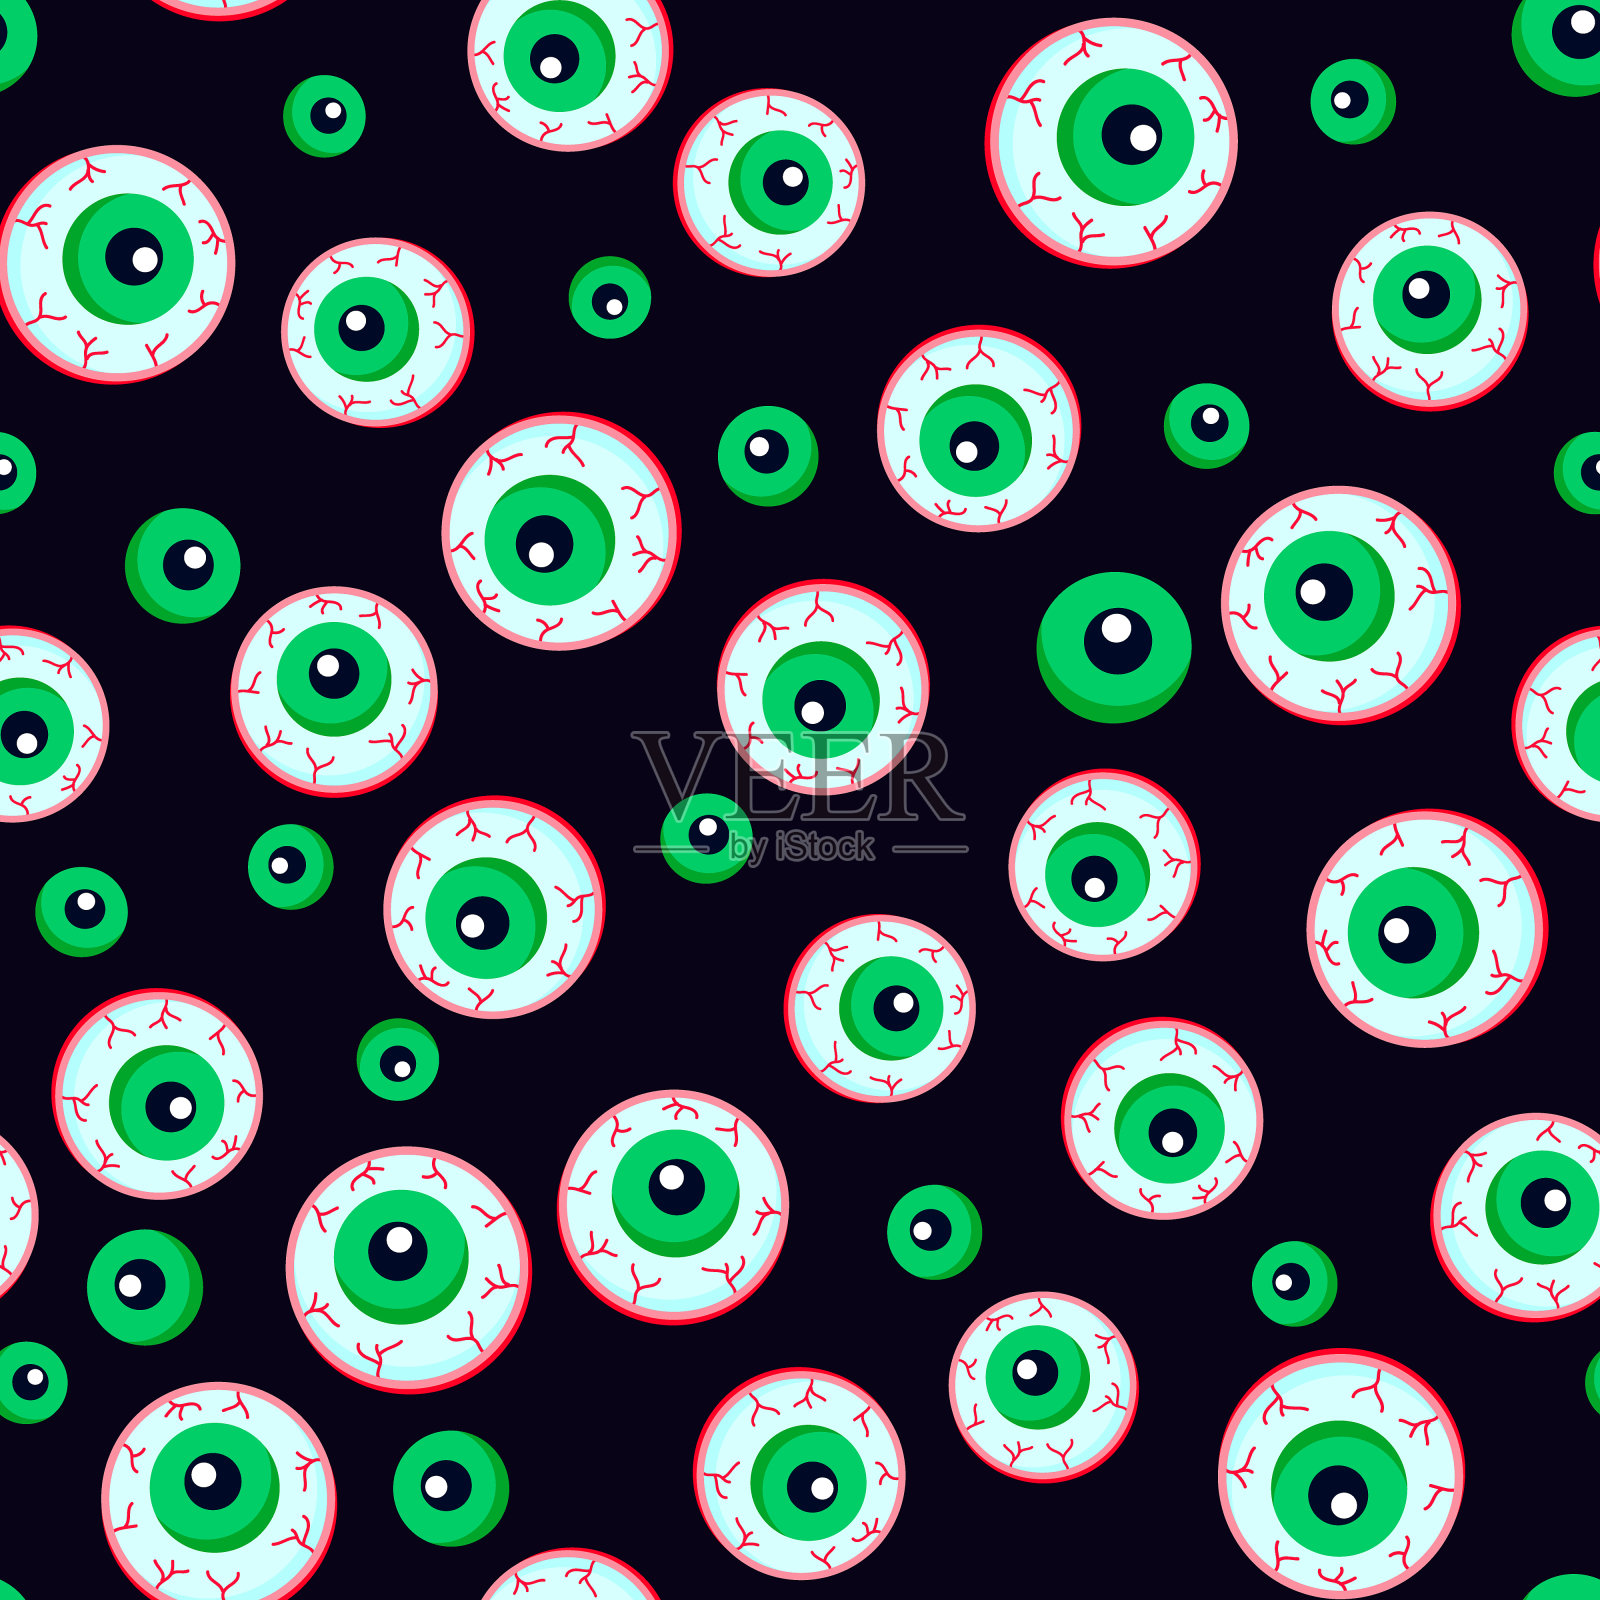 超过 200 张关于“恐怖的眼睛”和“恐怖”的免费图片 - Pixabay